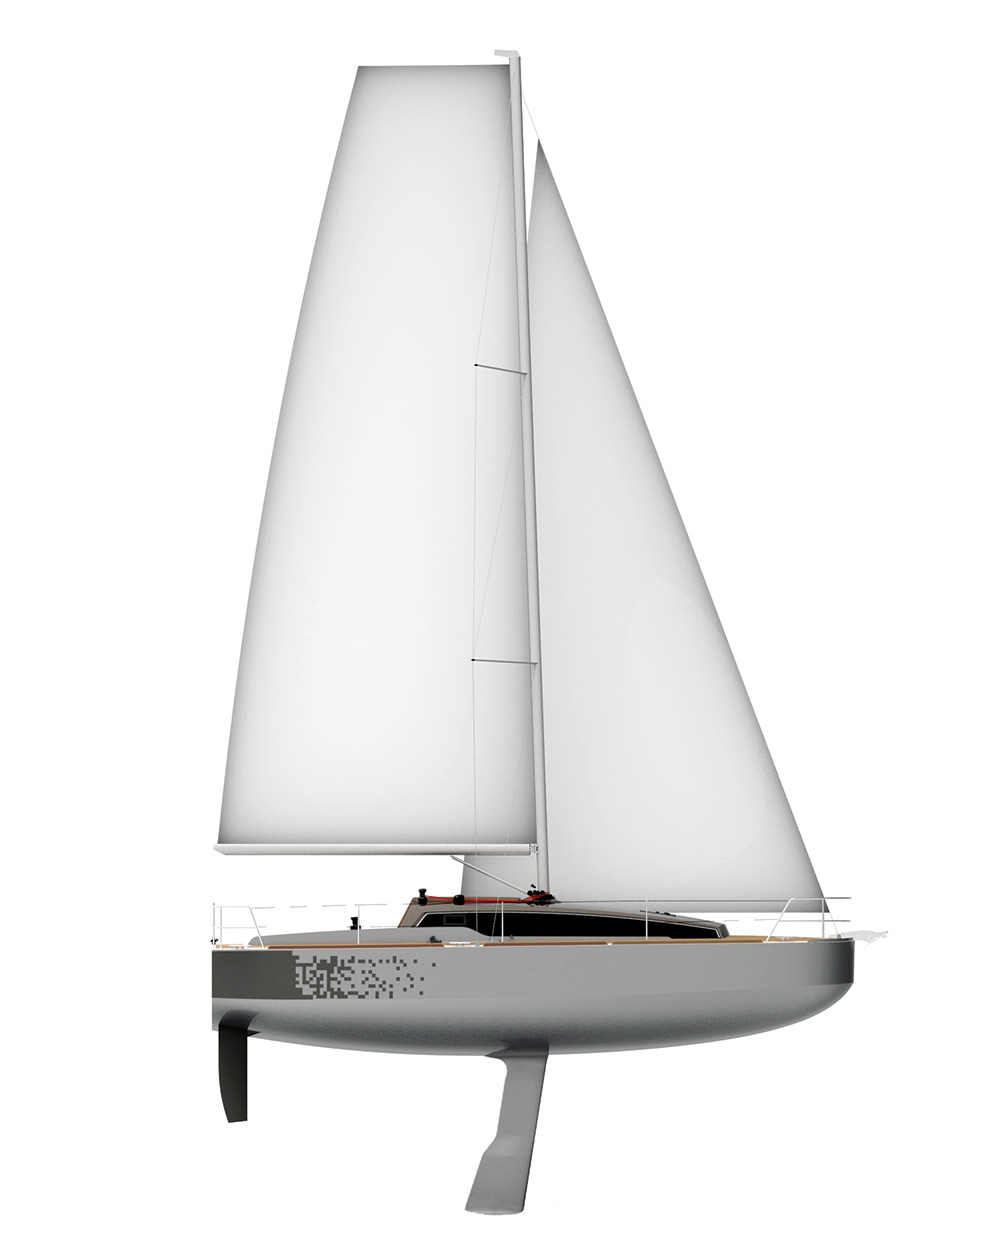 revolution 22 sailboat